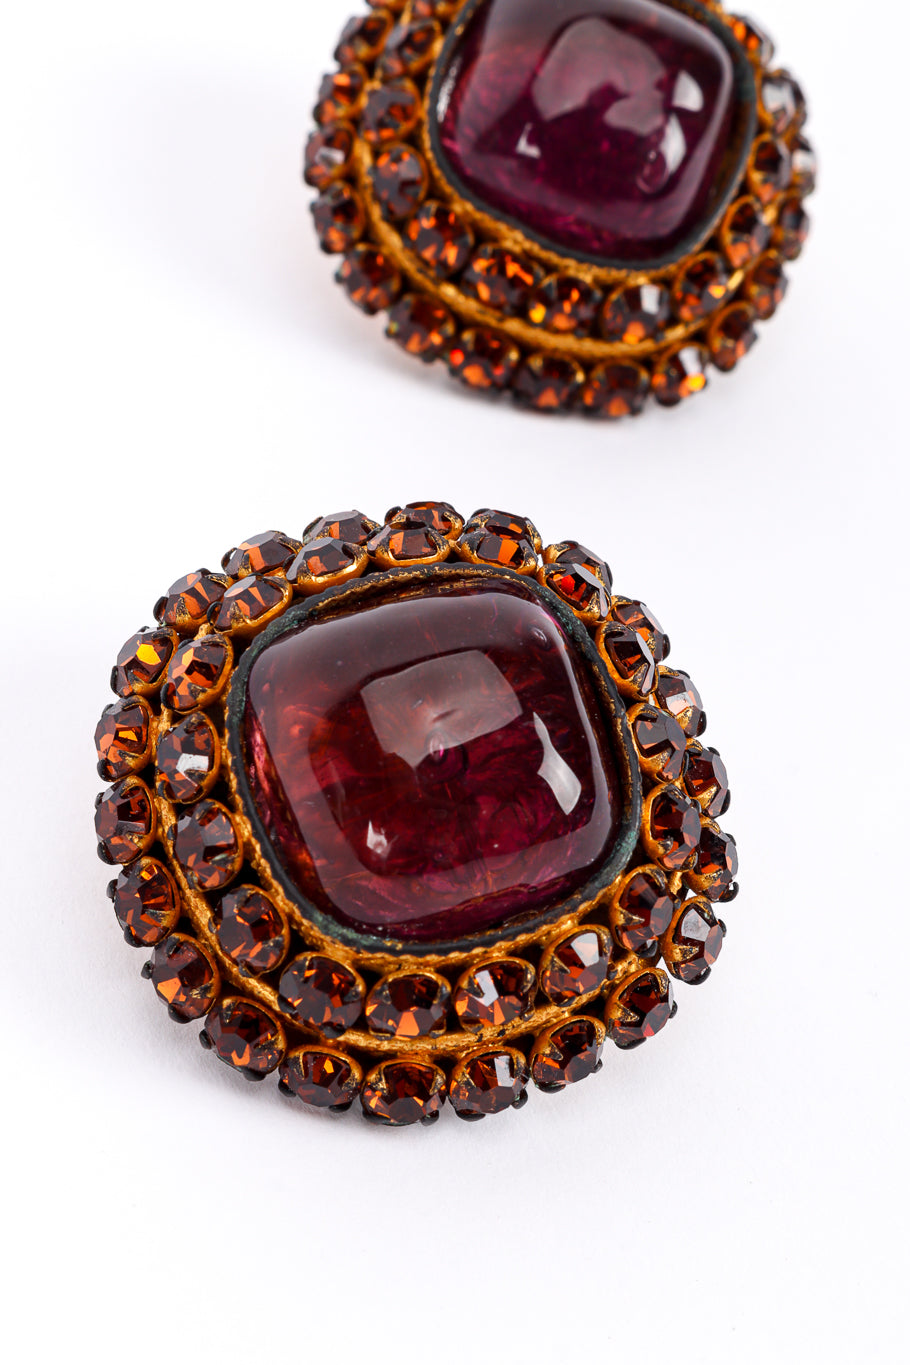 Vintage Dominique Aurientis Crystal Gripoix Necklace & Earrings Set earring closeup @recessla